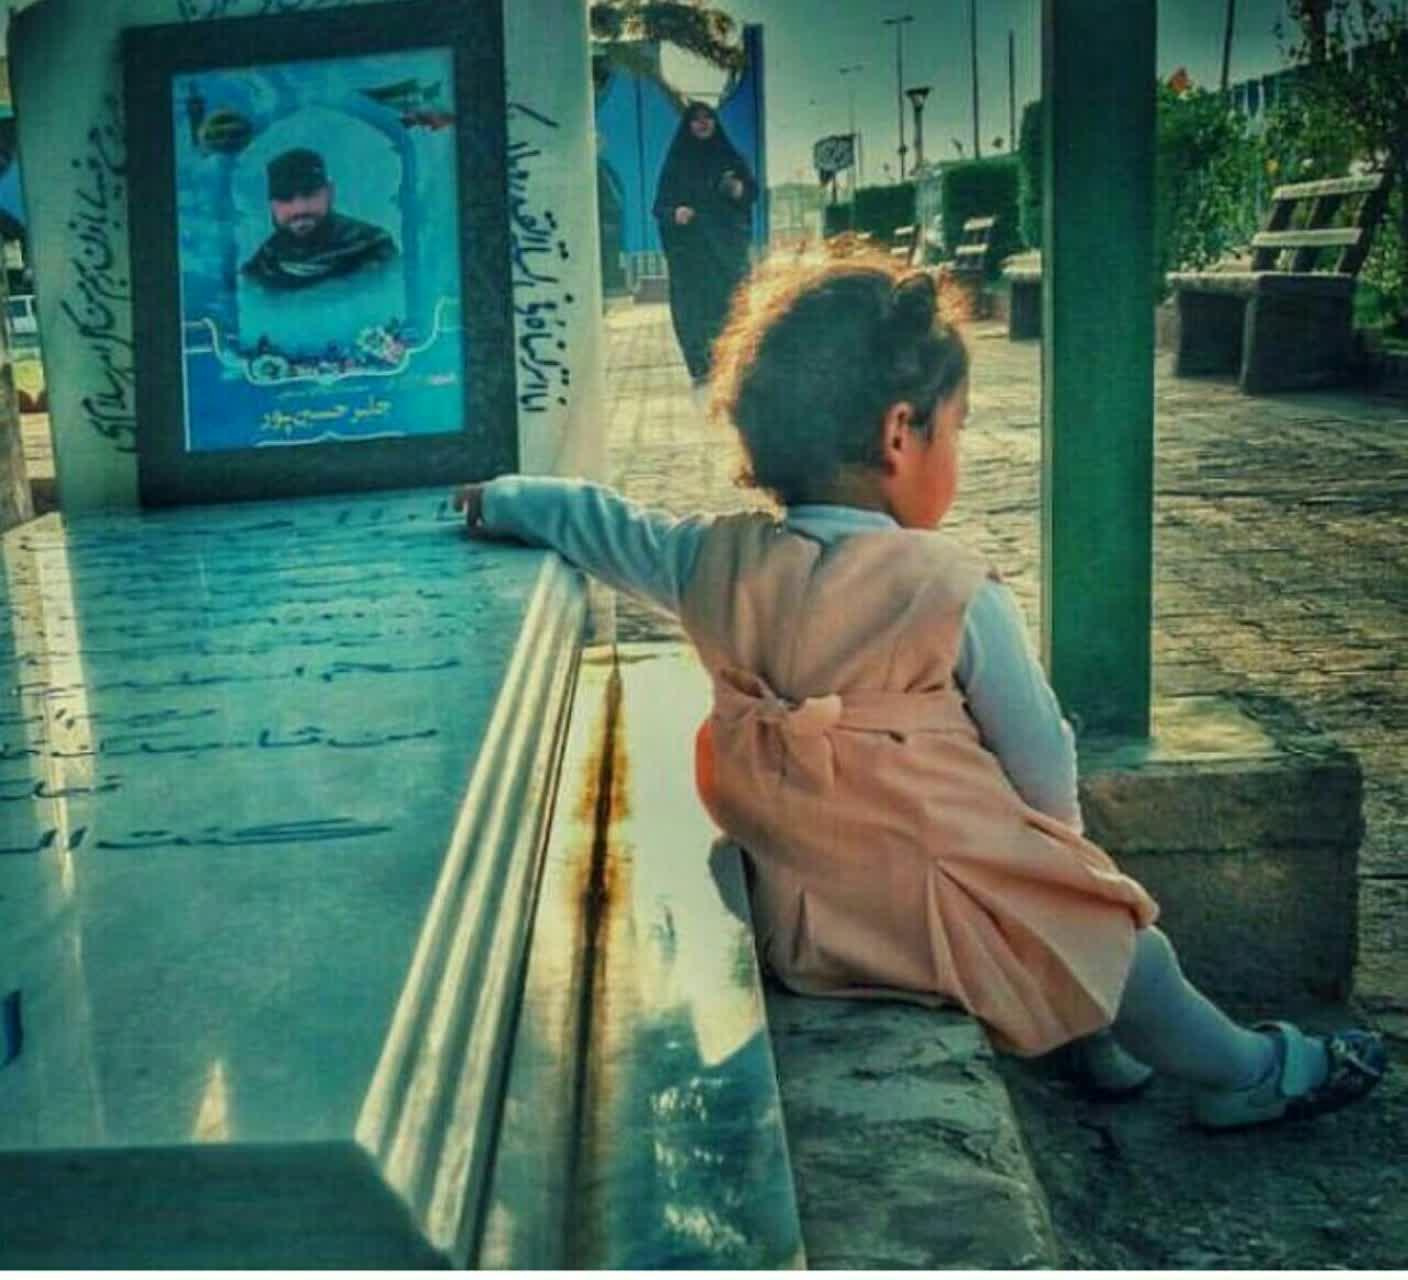 تصویری کمتر دیده شده از فرزند شهید جابر حسینی